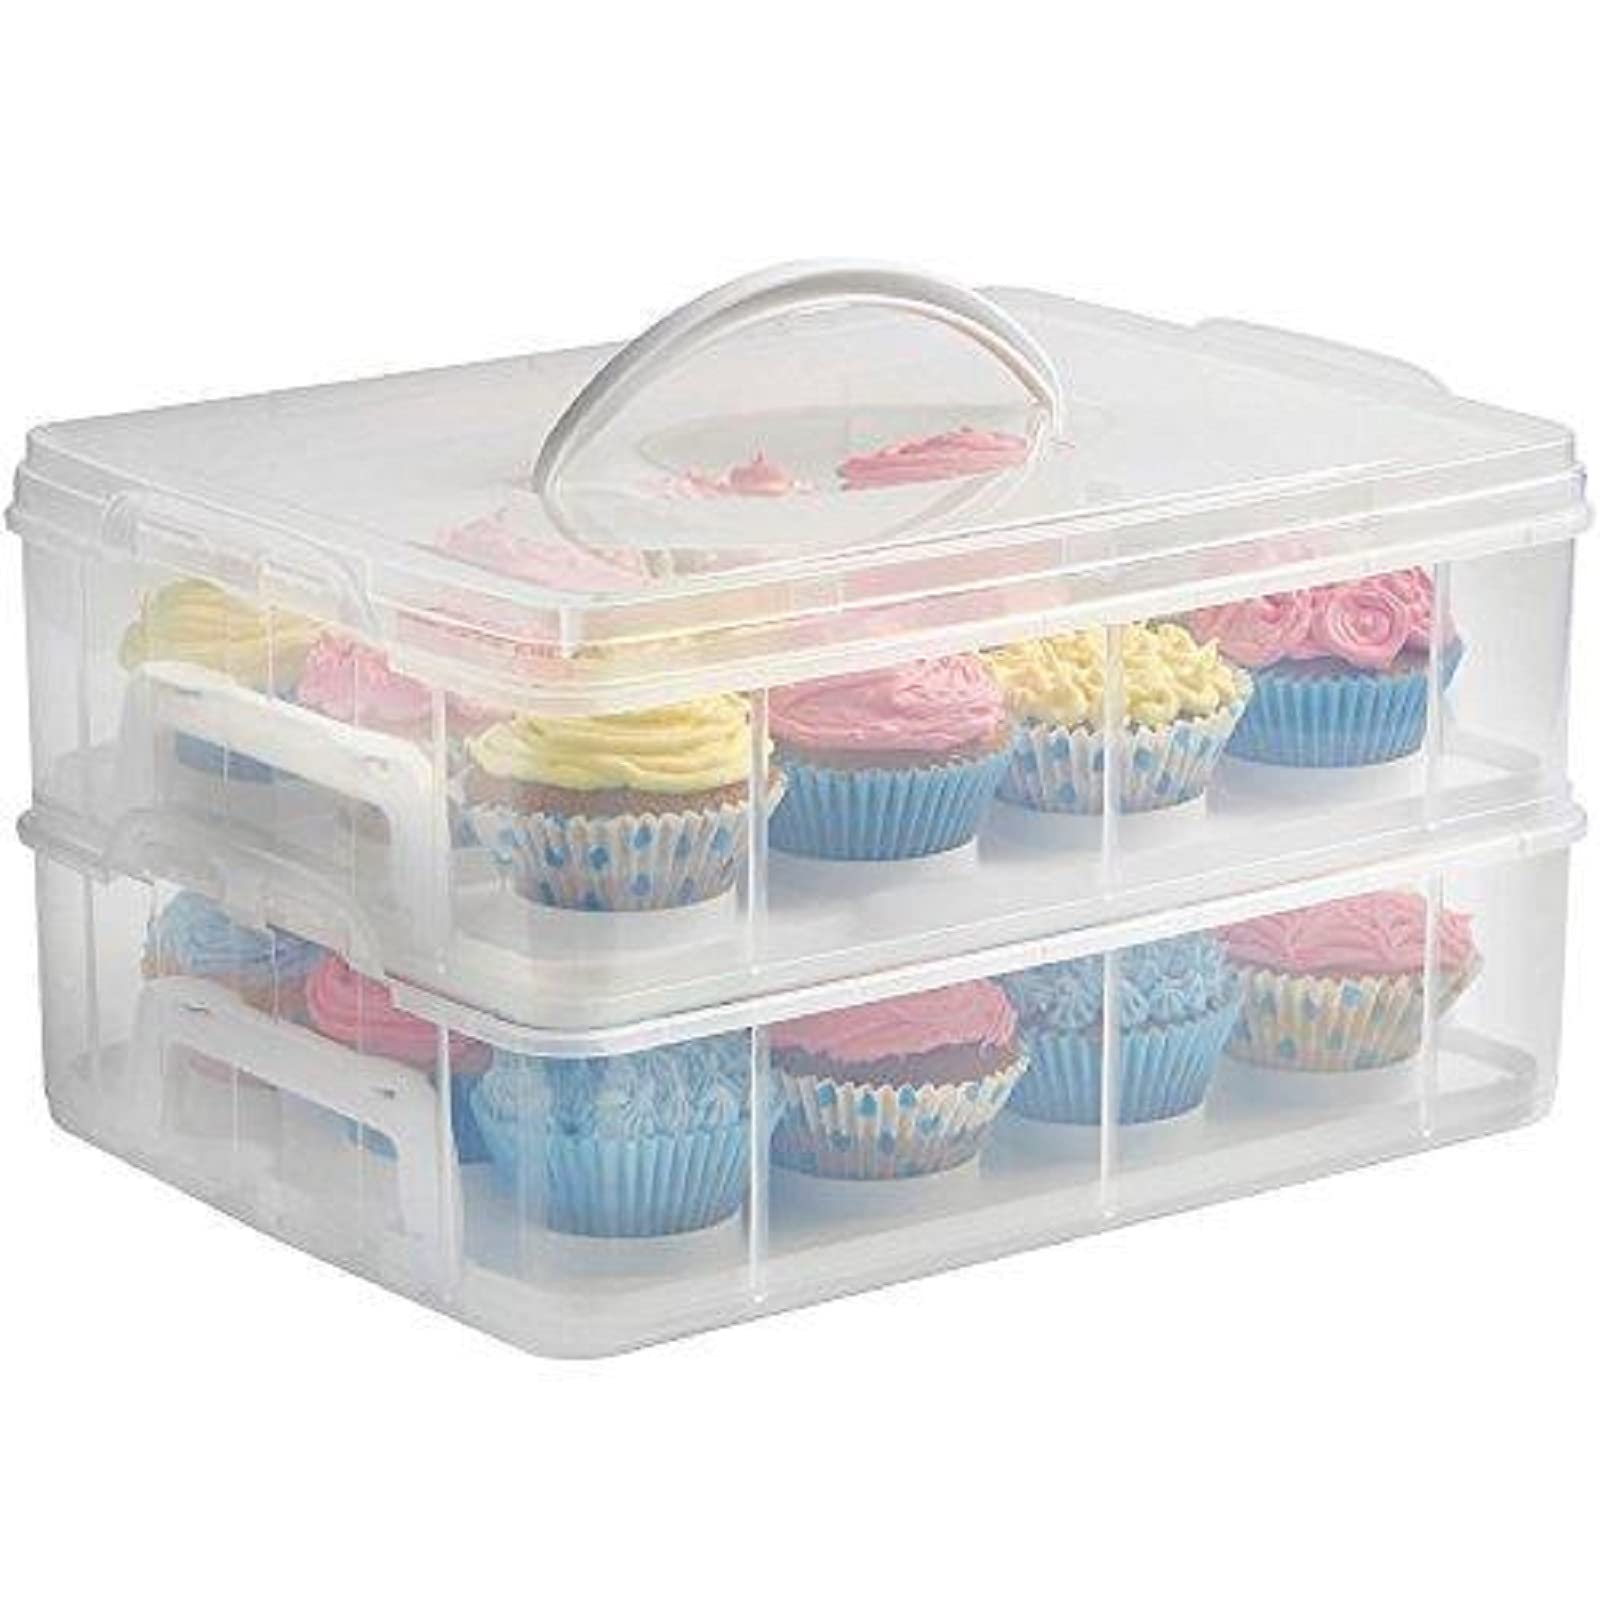 Wolfcut Stapelbare Muffinbox rechteckig aus Kunststoff, Muffin/Cupcake Transportbox, Muffin Box geeignet für 24 Muffins/Cupcakes max. Ø5,4 cm